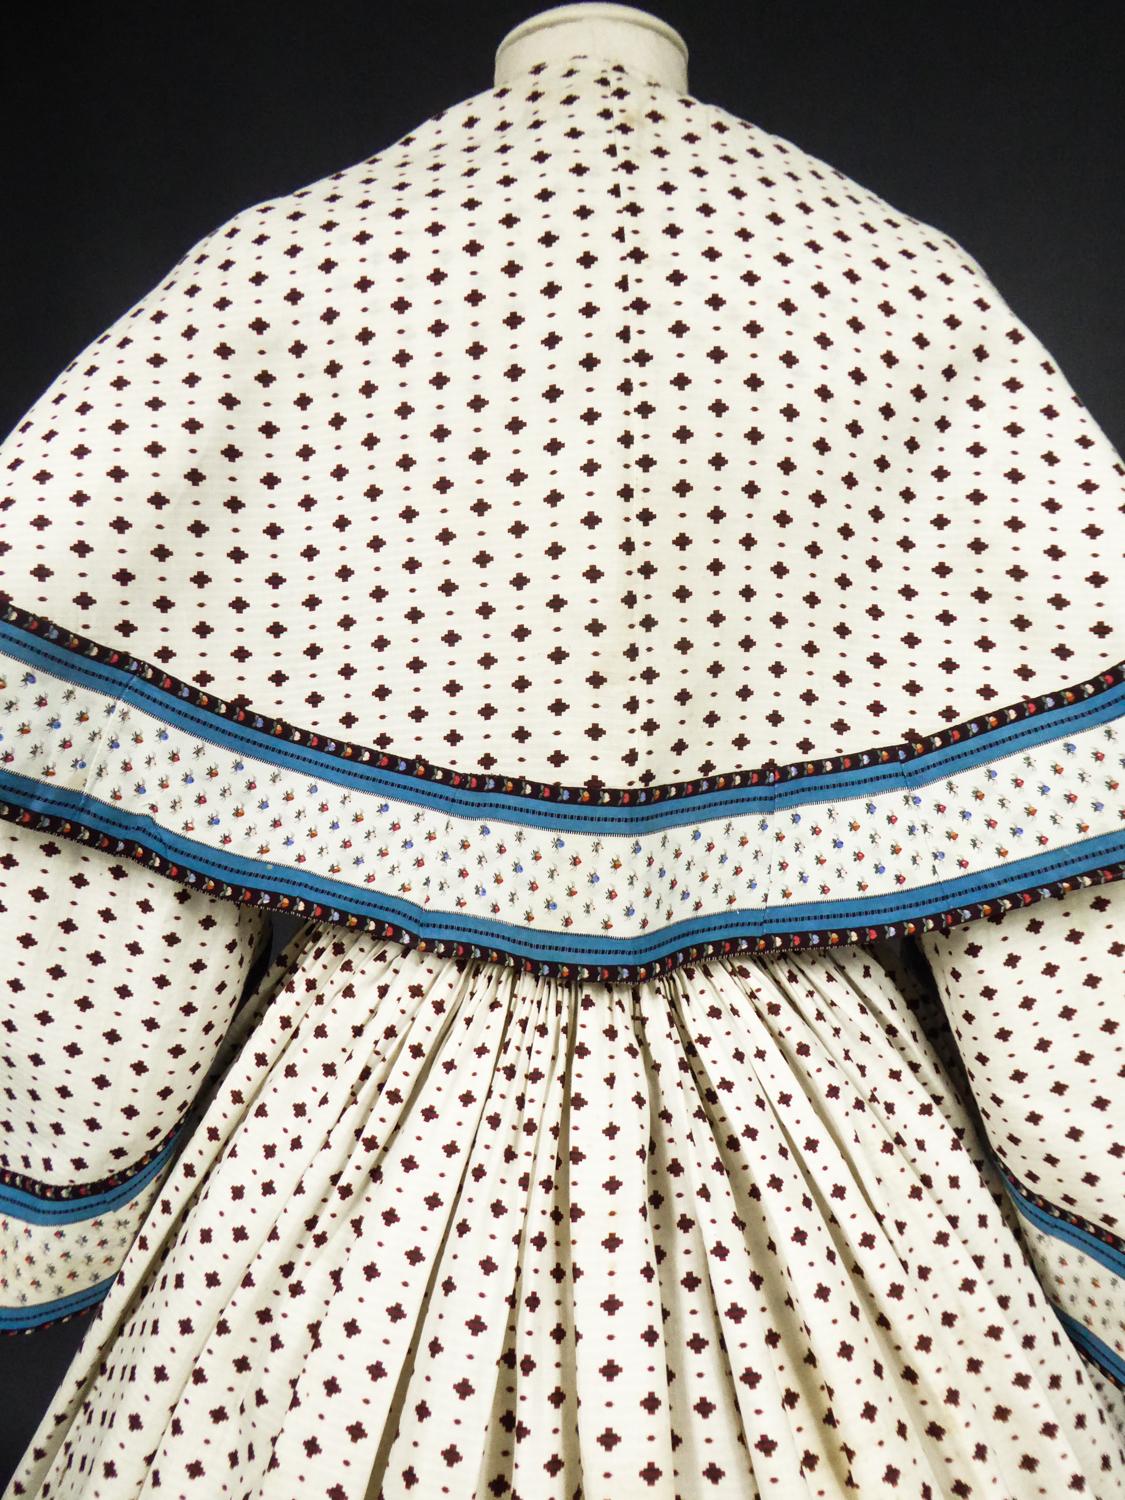 A Printed Cotton Crinoline Day Dress - France Napoleon III Period Circa 1865 5